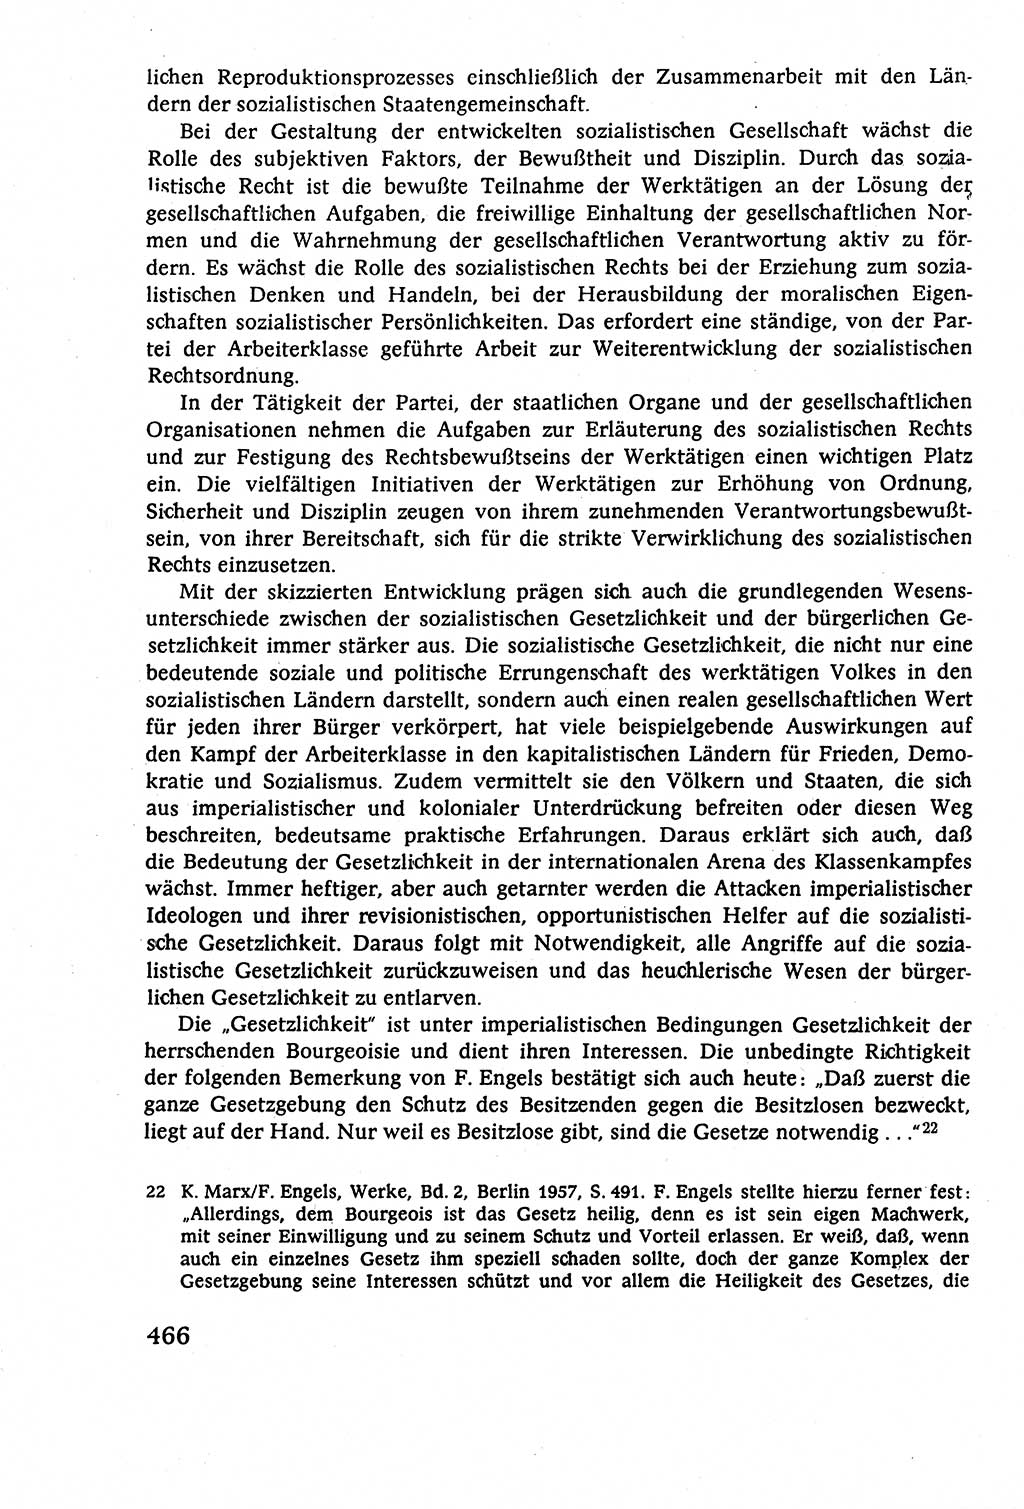 Staatsrecht der DDR (Deutsche Demokratische Republik), Lehrbuch 1977, Seite 466 (St.-R. DDR Lb. 1977, S. 466)